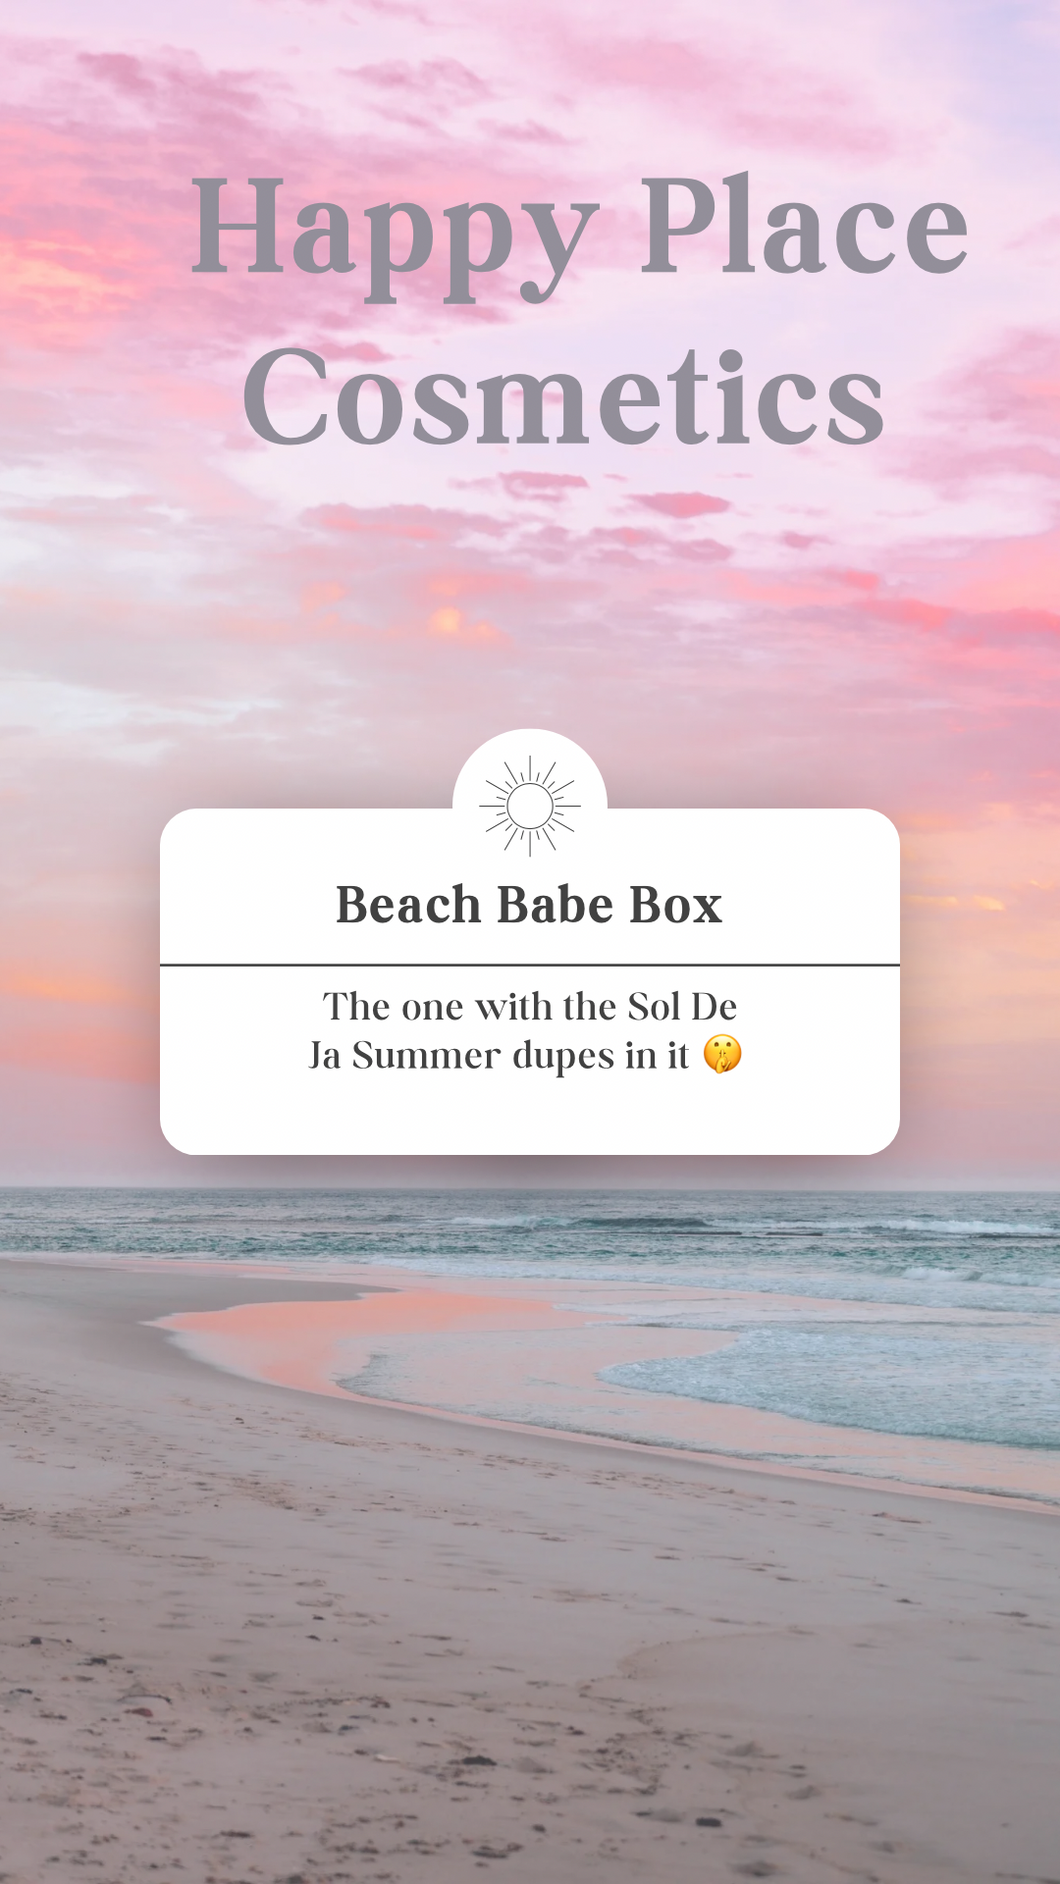 The Beach Babe Box